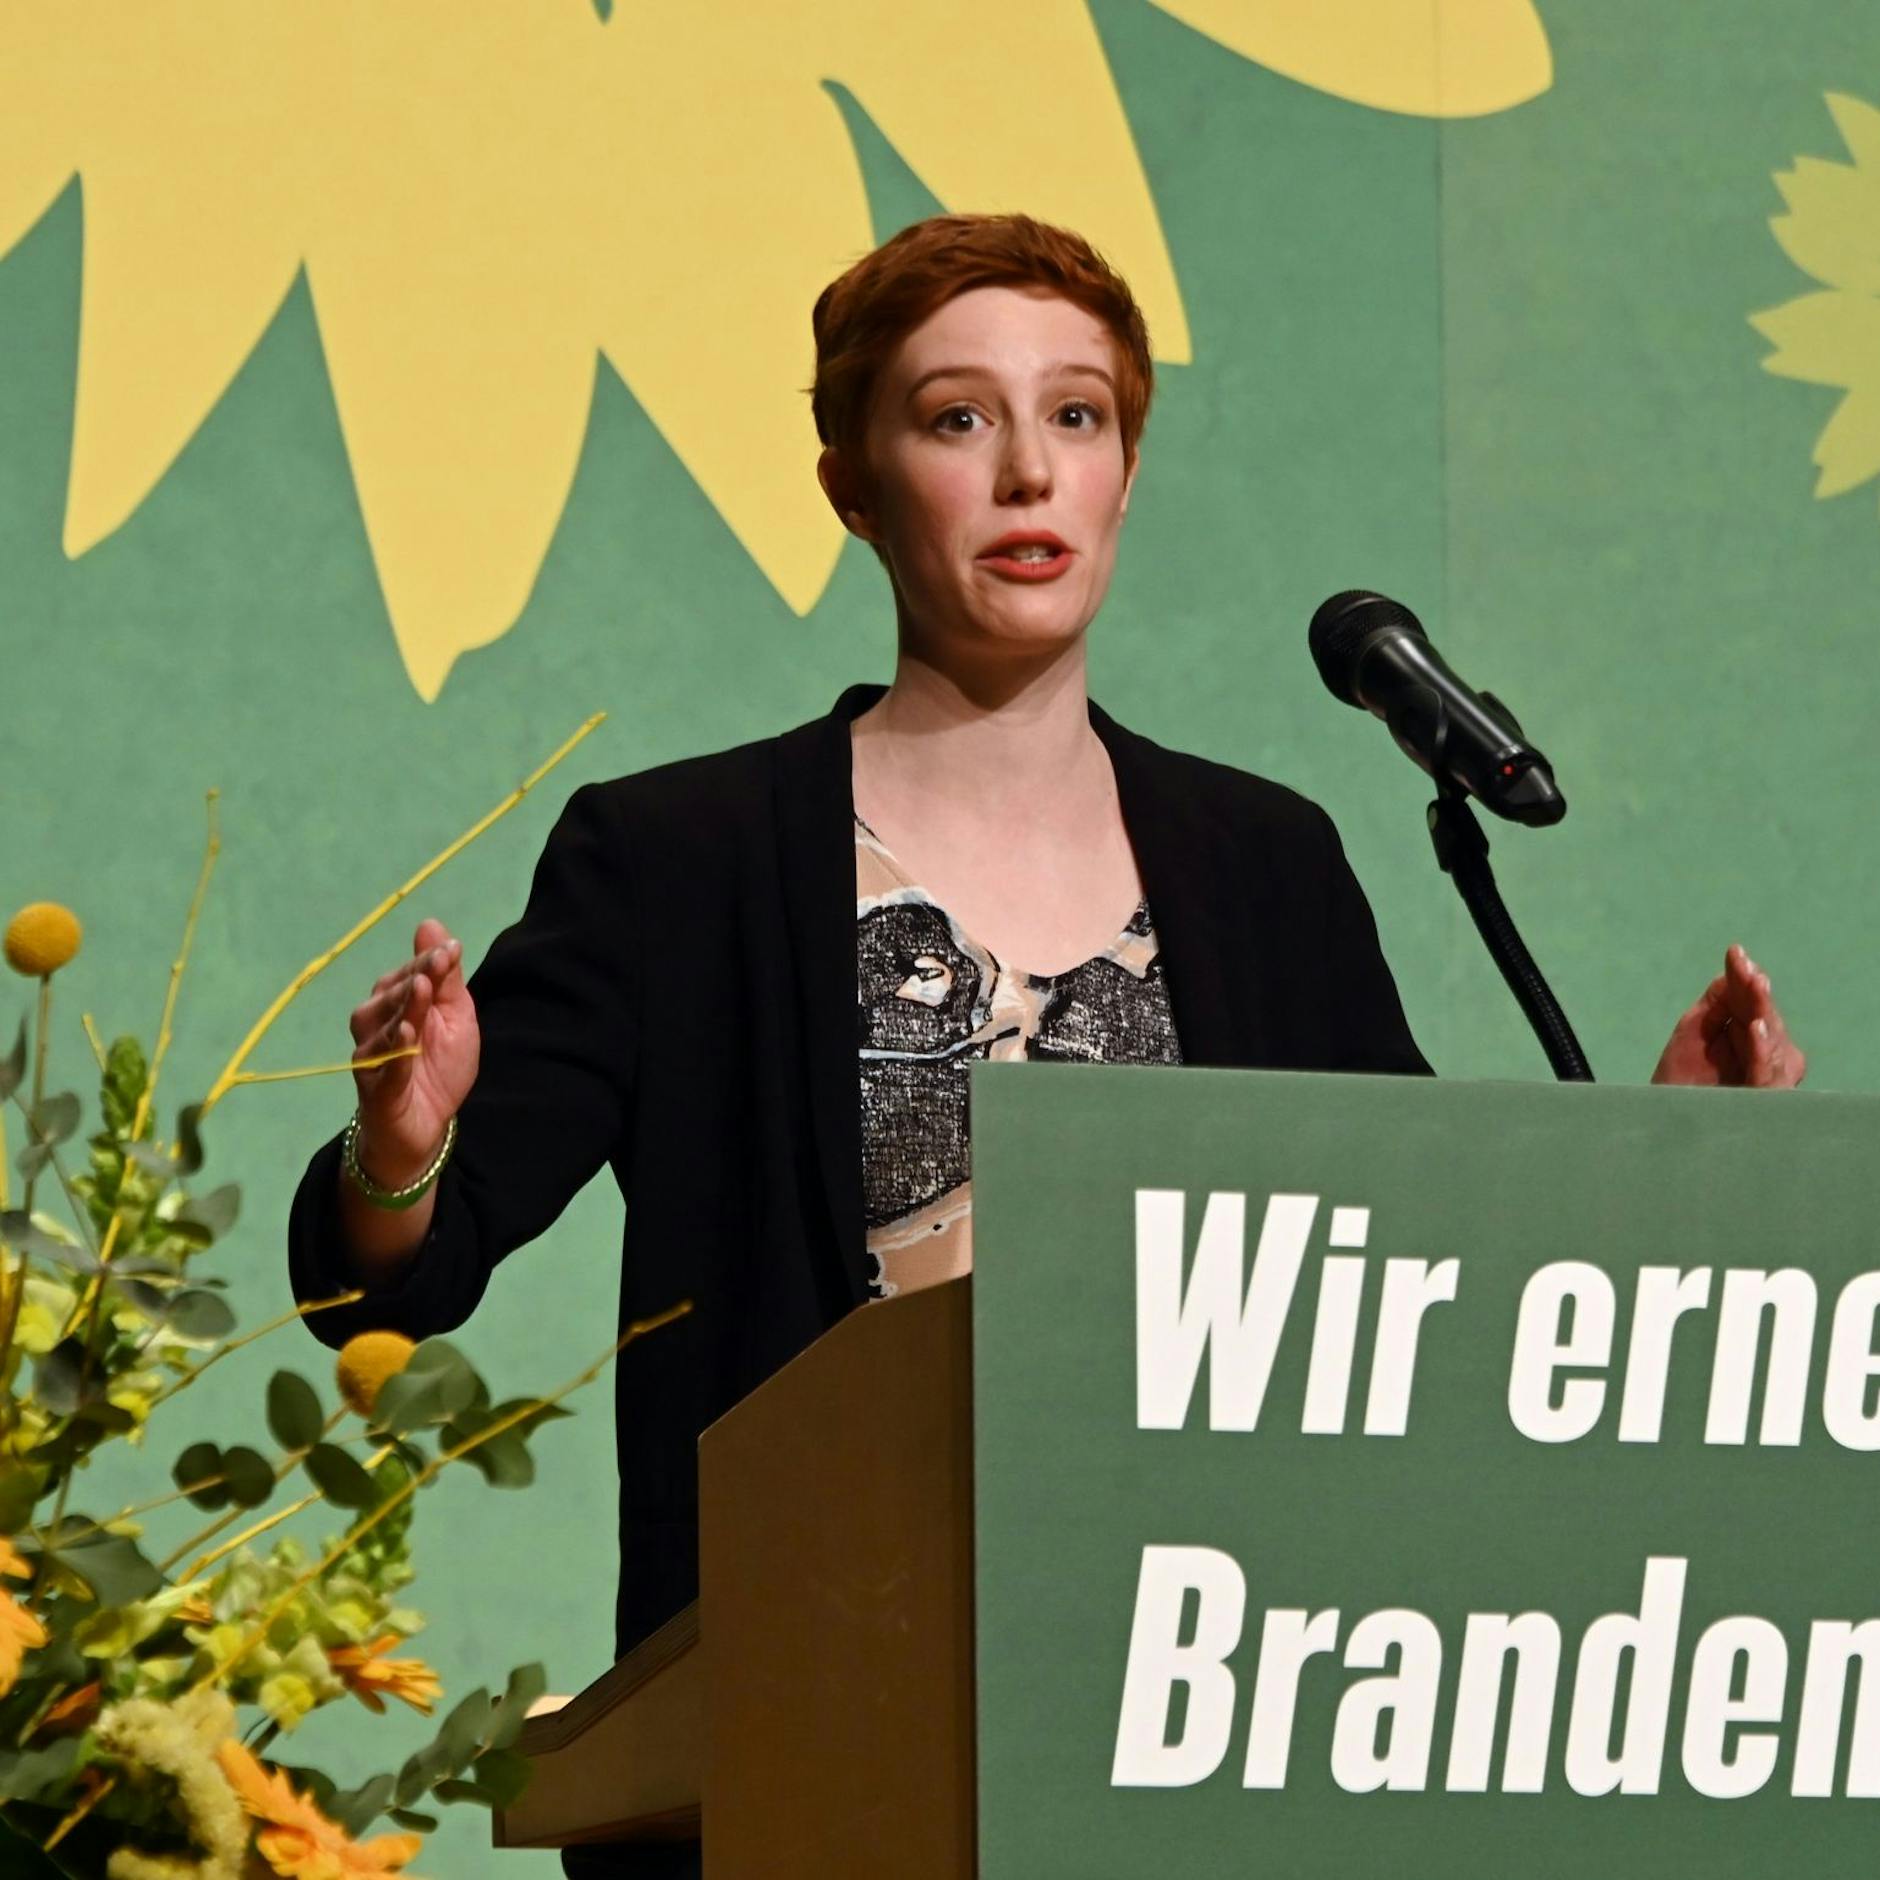 Image - Brandenburg: Grünen-Landeschefin will schnelleren Kohleausstieg